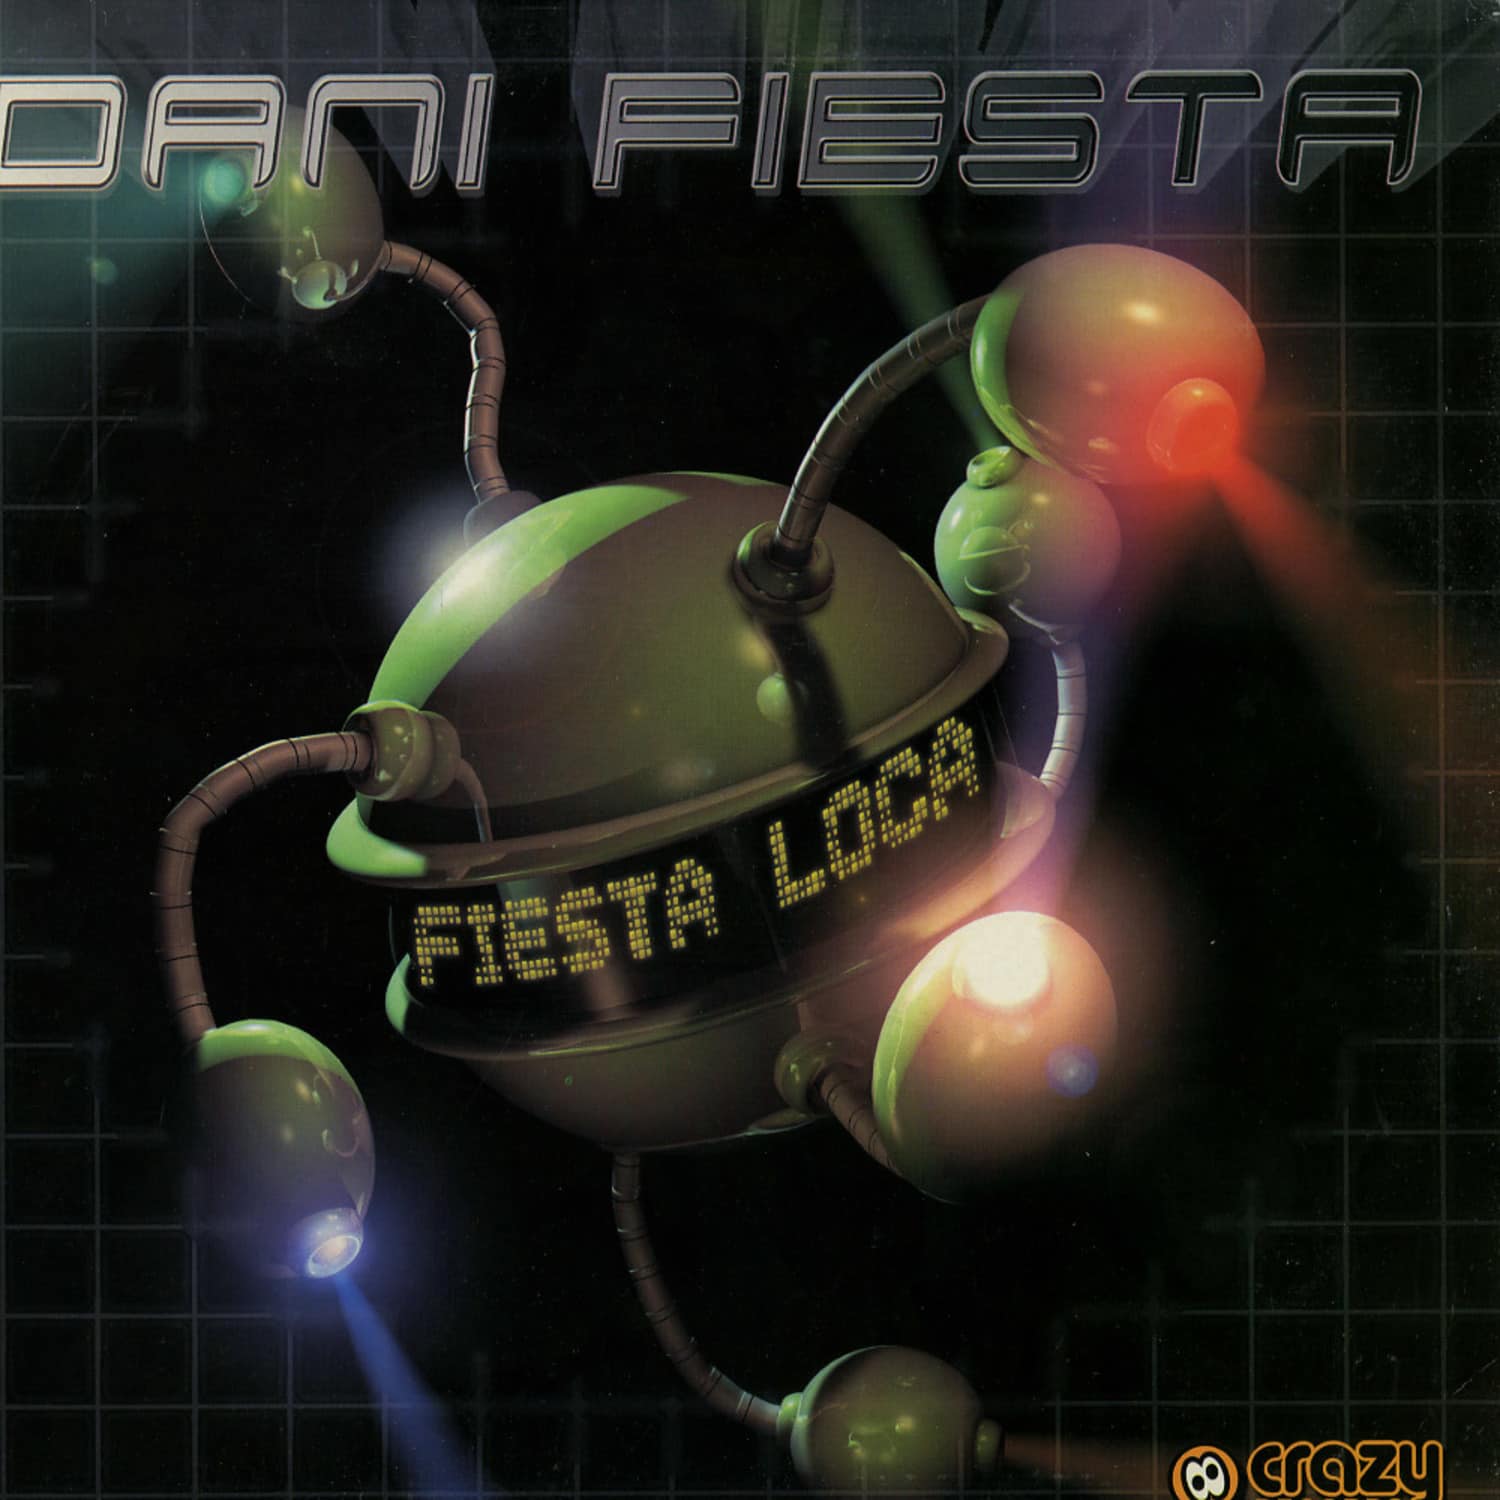 Dani Fiesta - FIESTA LOCA